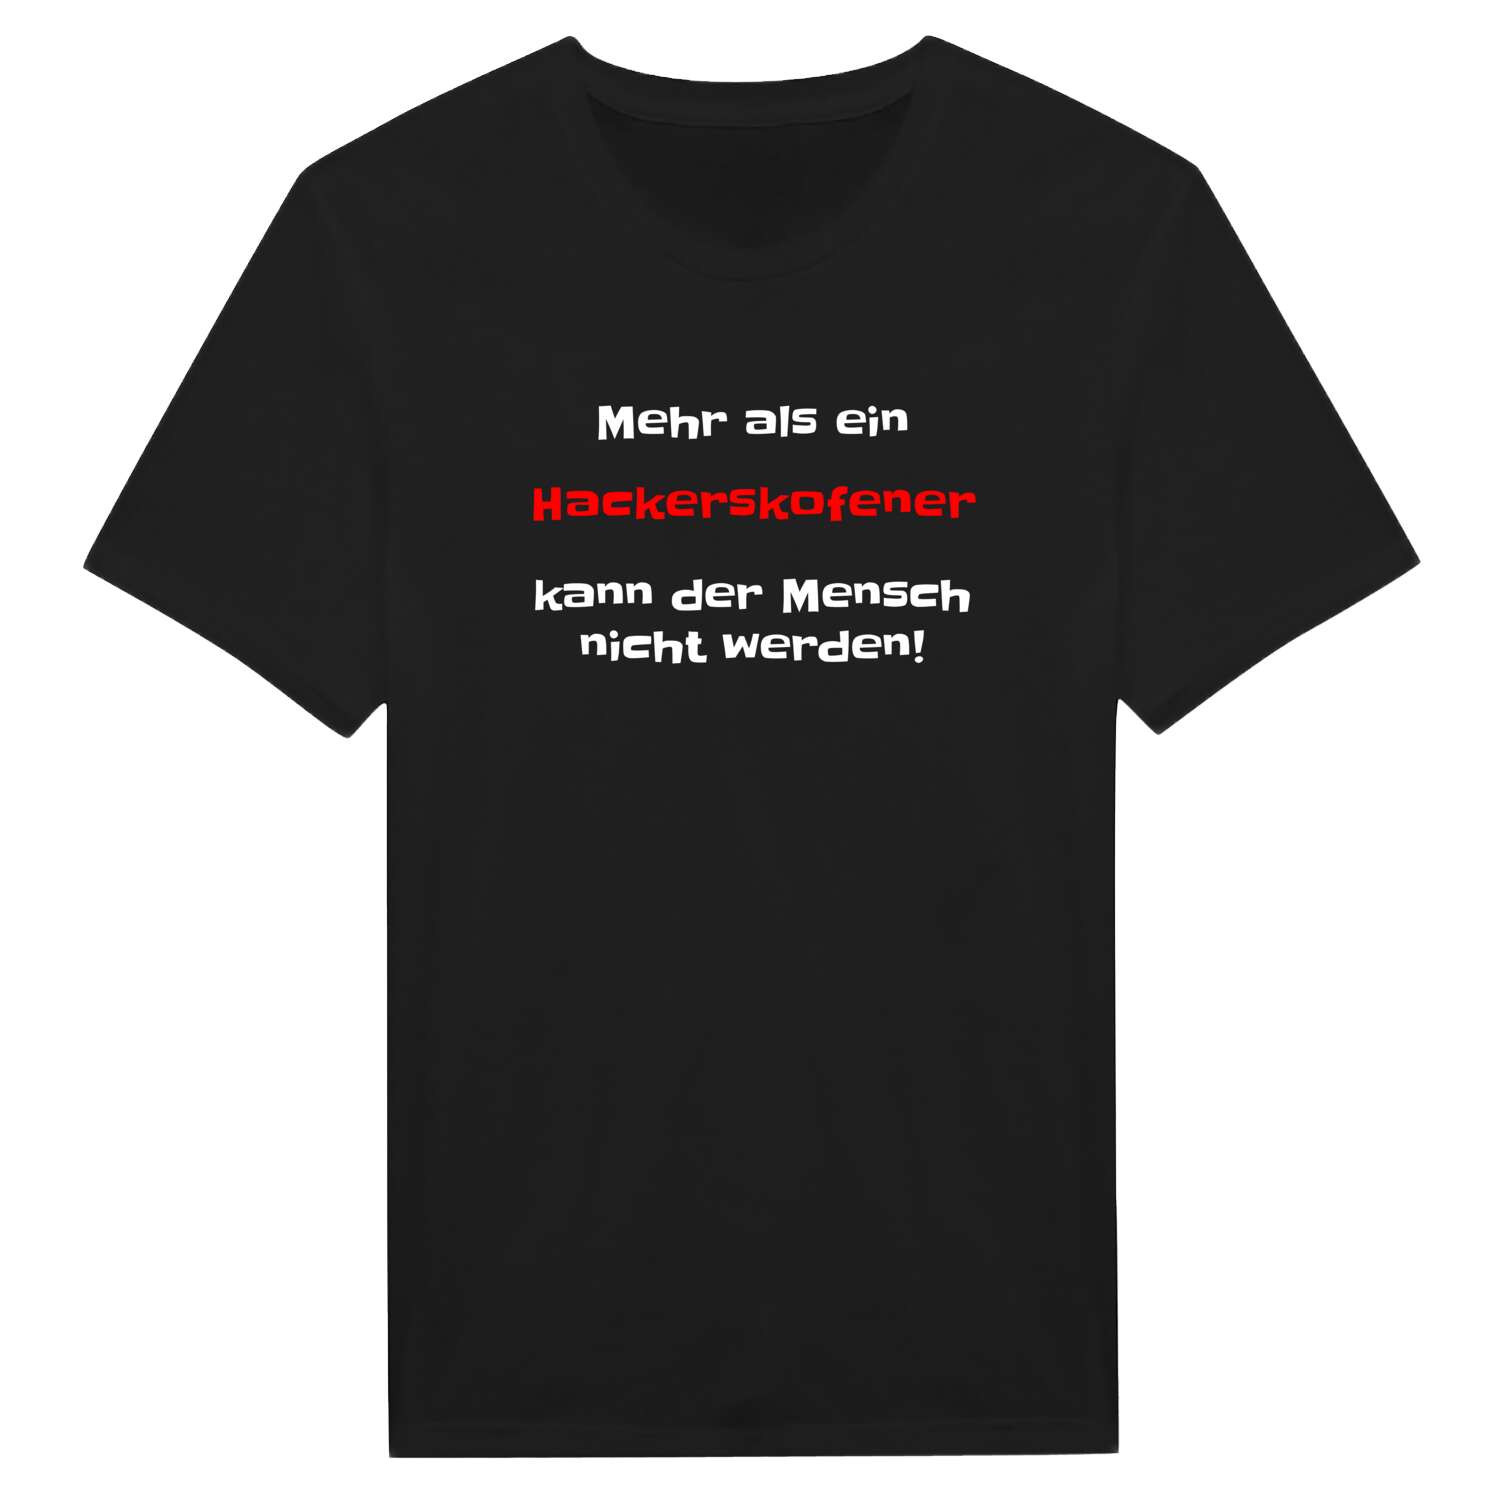 Hackerskofen T-Shirt »Mehr als ein«